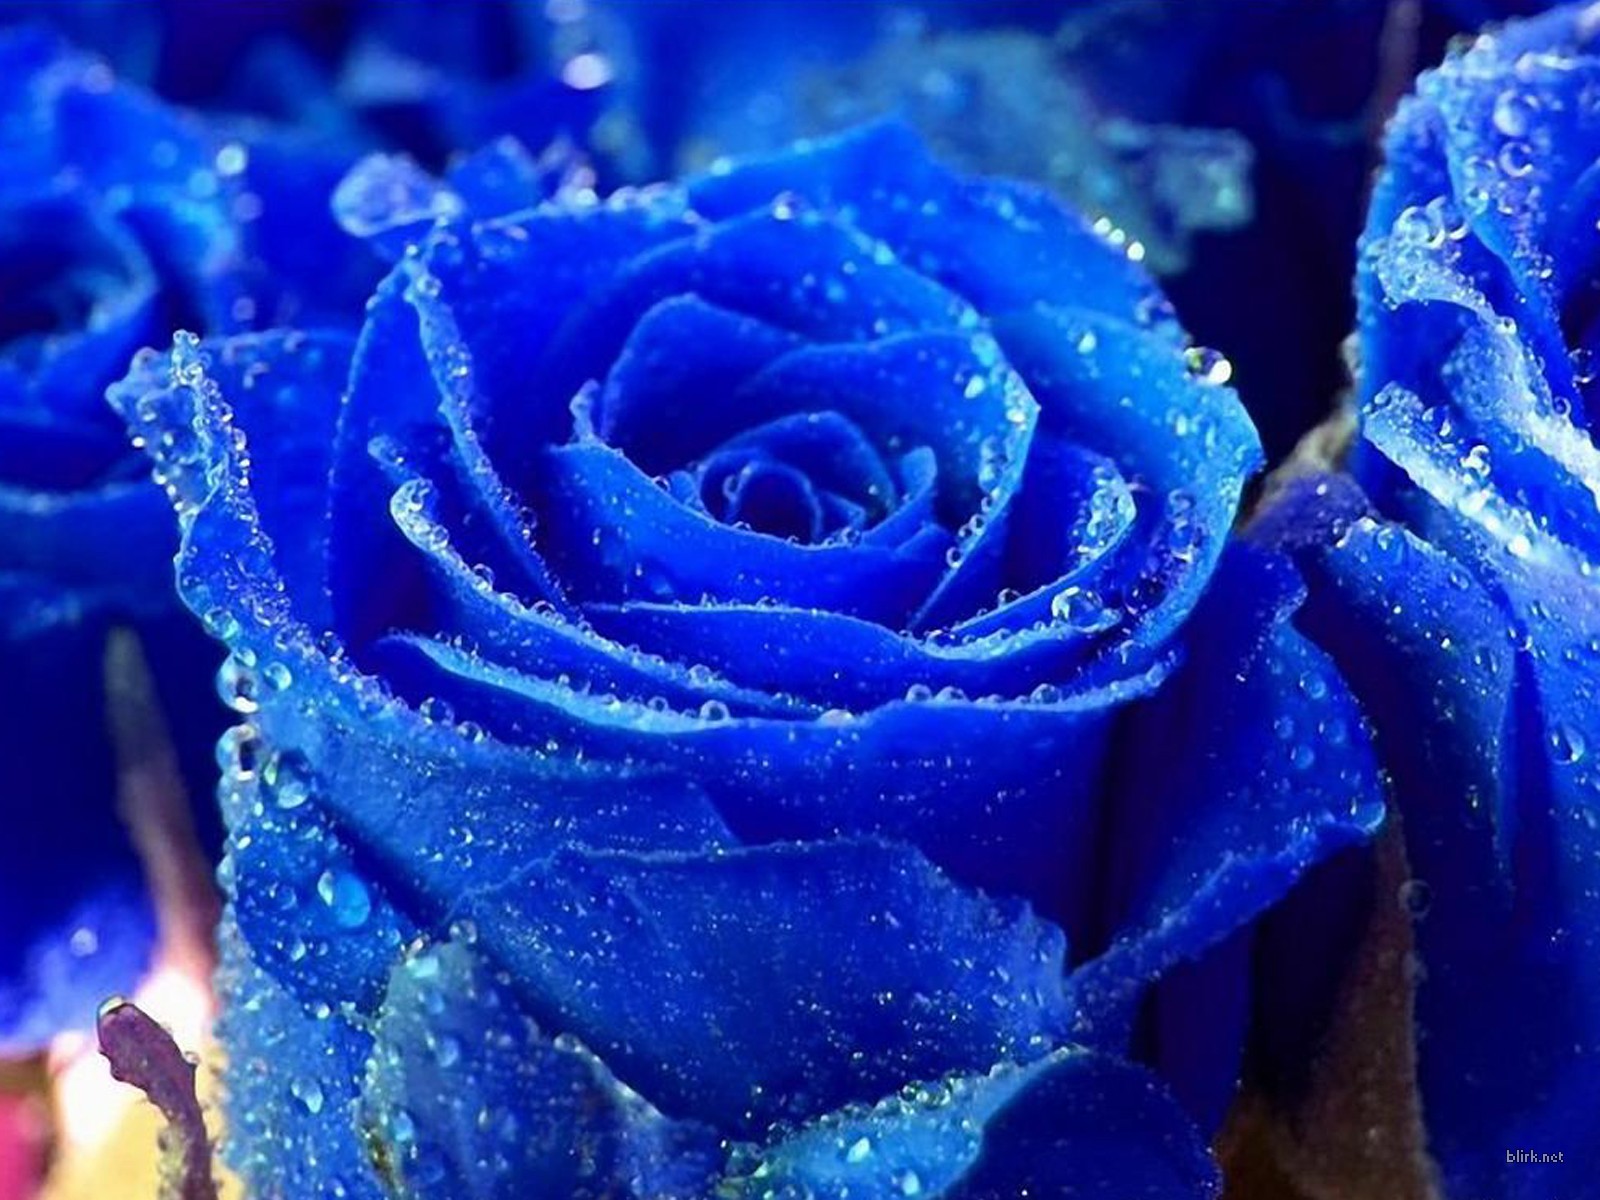 Truy cập ngay vào hình nền hoa hồng xanh để tận hưởng bức tranh tuyệt đẹp với những chiếc hoa hồng màu xanh ngọc bích như quý giá.